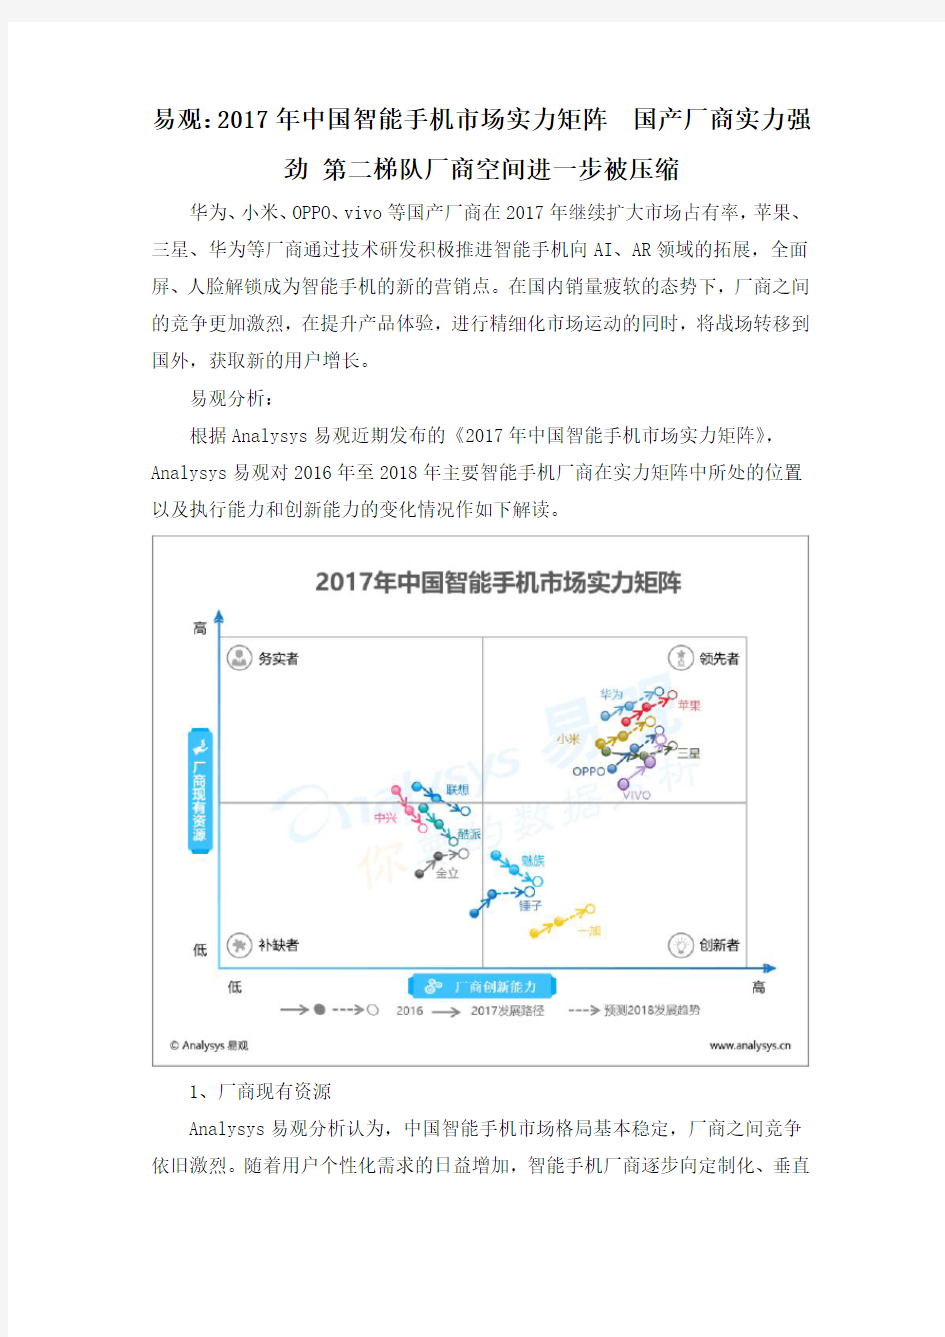 易观：2017年中国智能手机市场实力矩阵  国产厂商实力强劲 第二梯队厂商空间进一步被压缩